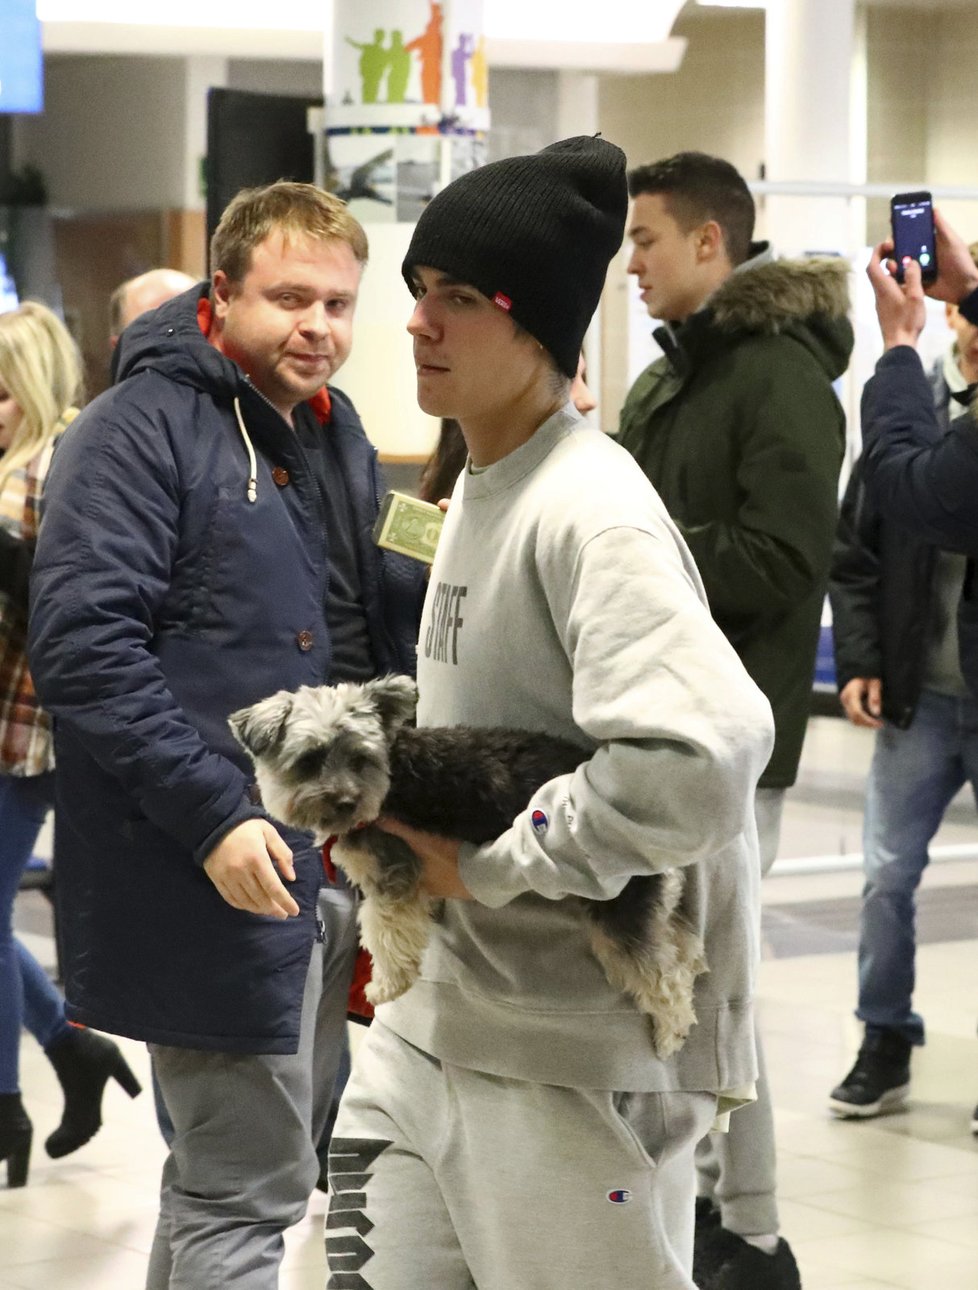 Justin si s sebou do Prahy přivezl i psího kamaráda.